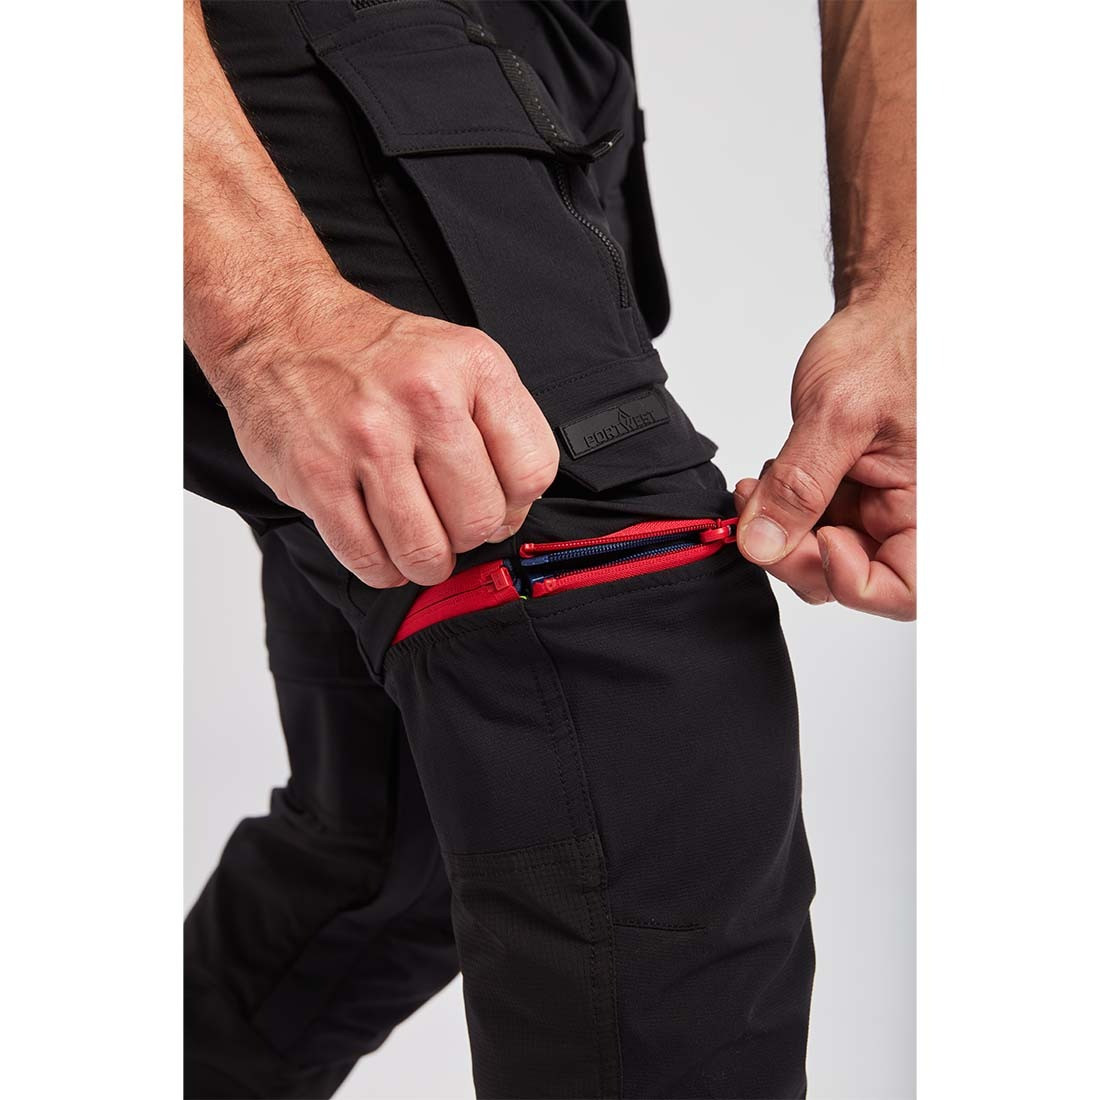 Pantalon Modulable ultime 3 en 1 - Les vêtements de protection